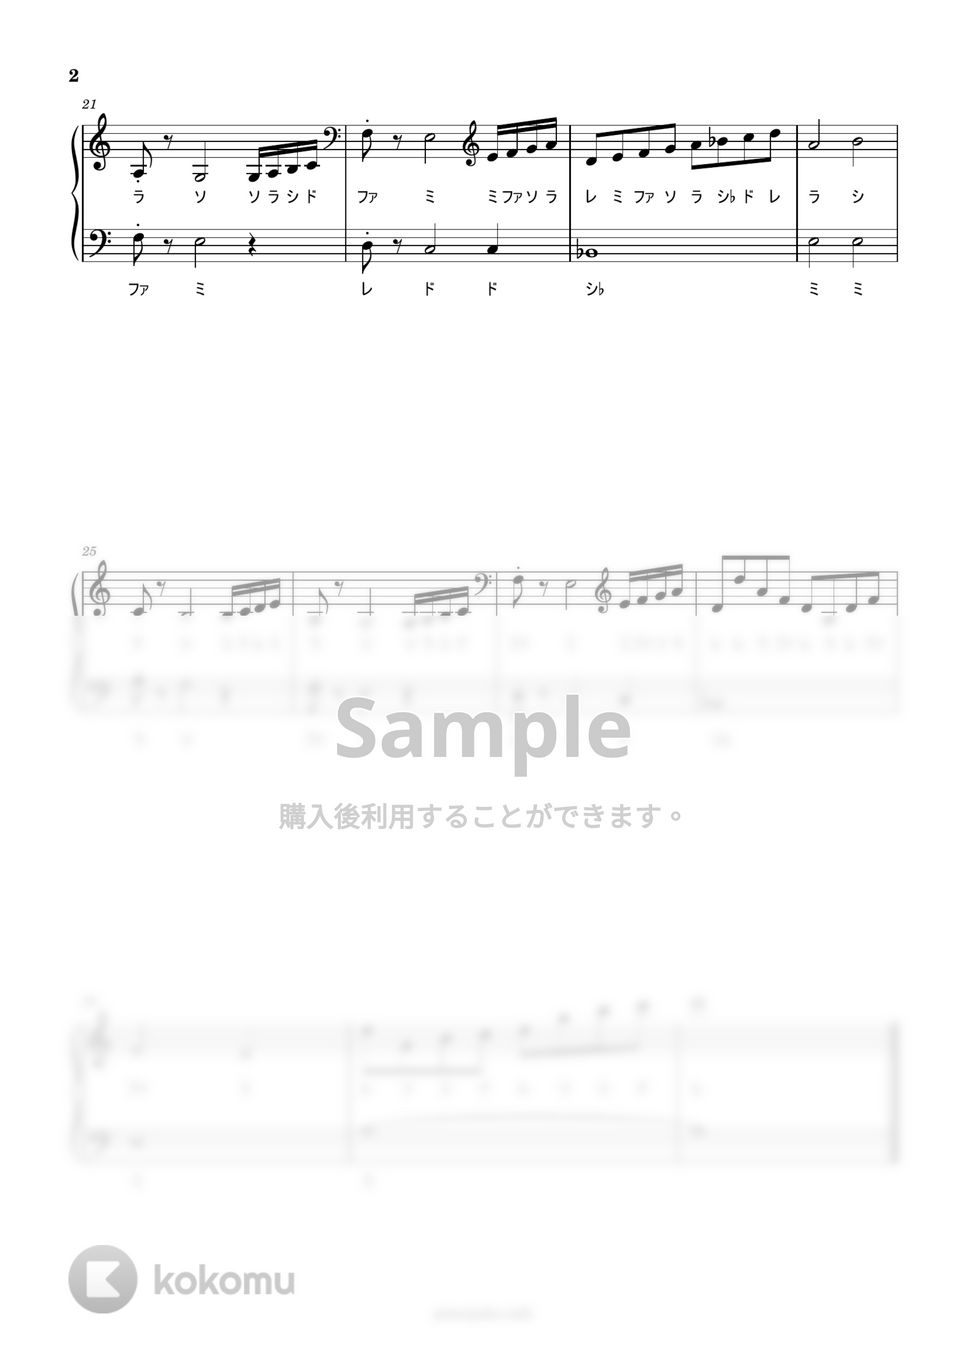 坂本龍一 - Energy Flow (ドレミ付き簡単楽譜) by ピアノ塾